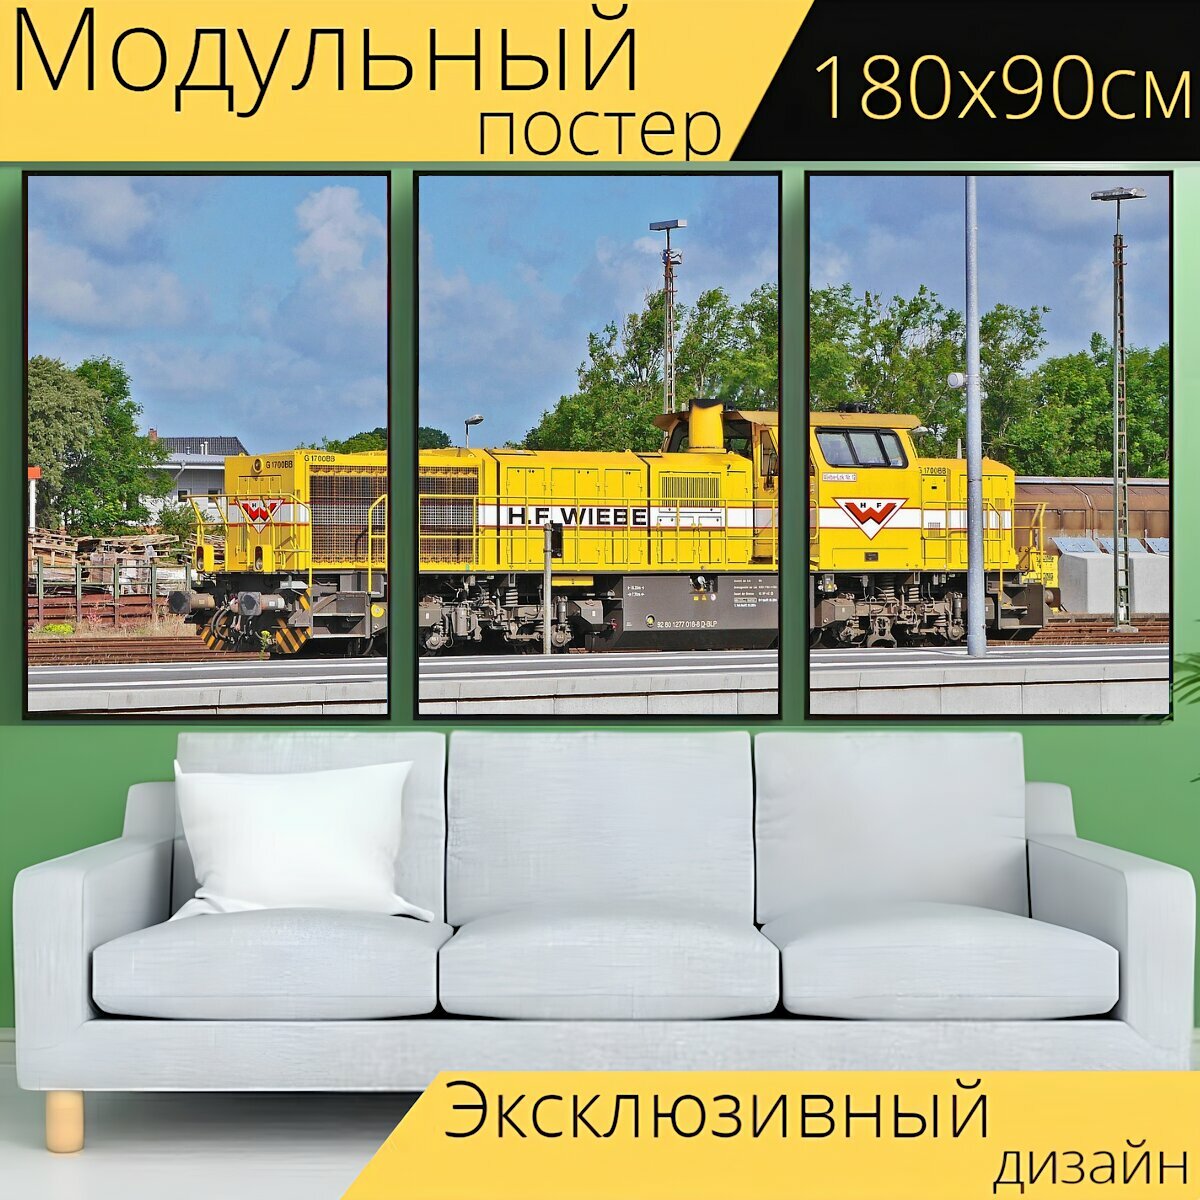 Модульный постер "Тепловоз, строительный поезд, частная железная дорога" 180 x 90 см. для интерьера